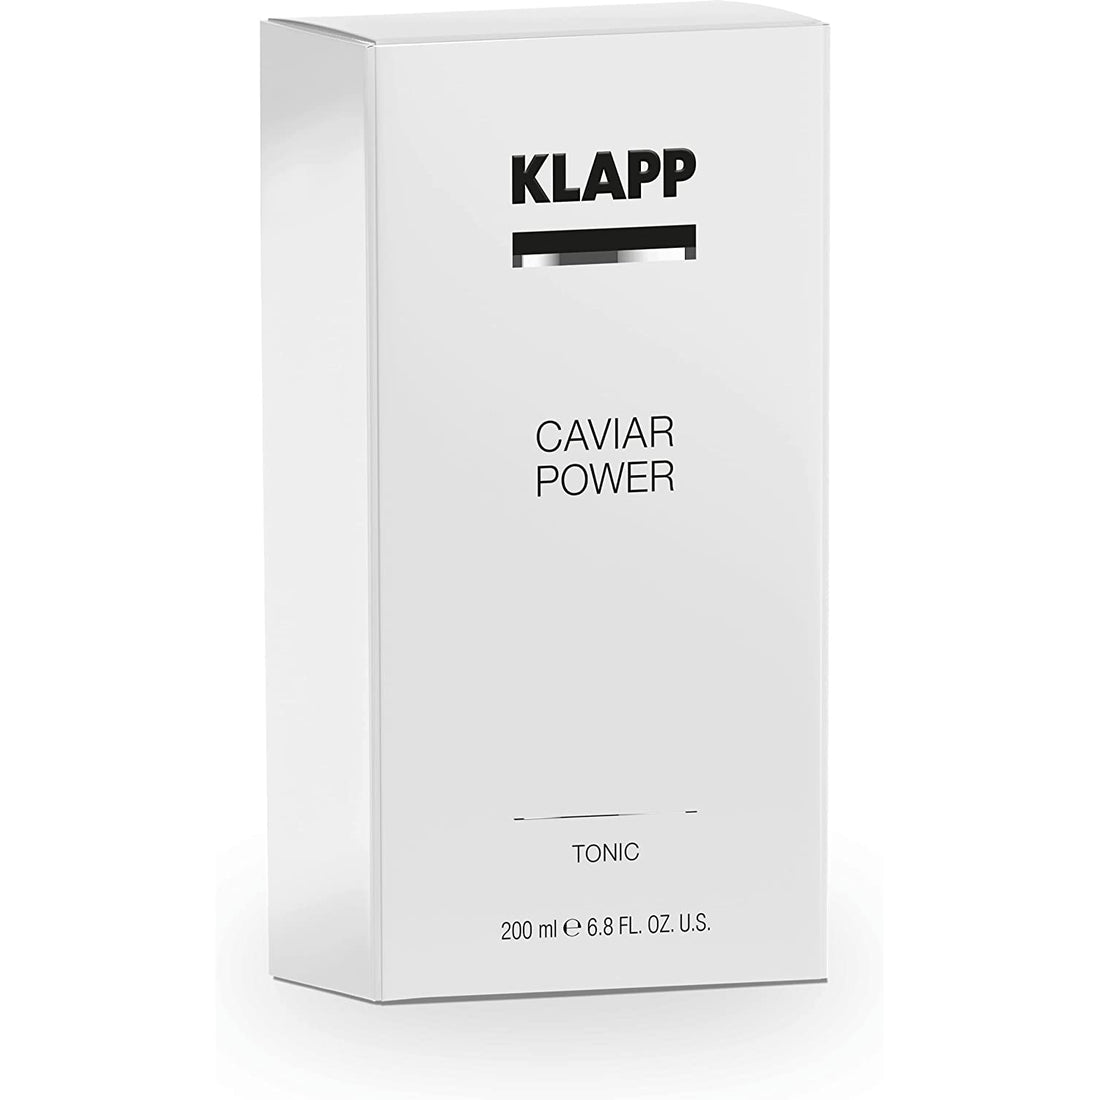 KLAPP - Caviar Power - Tonic lotion